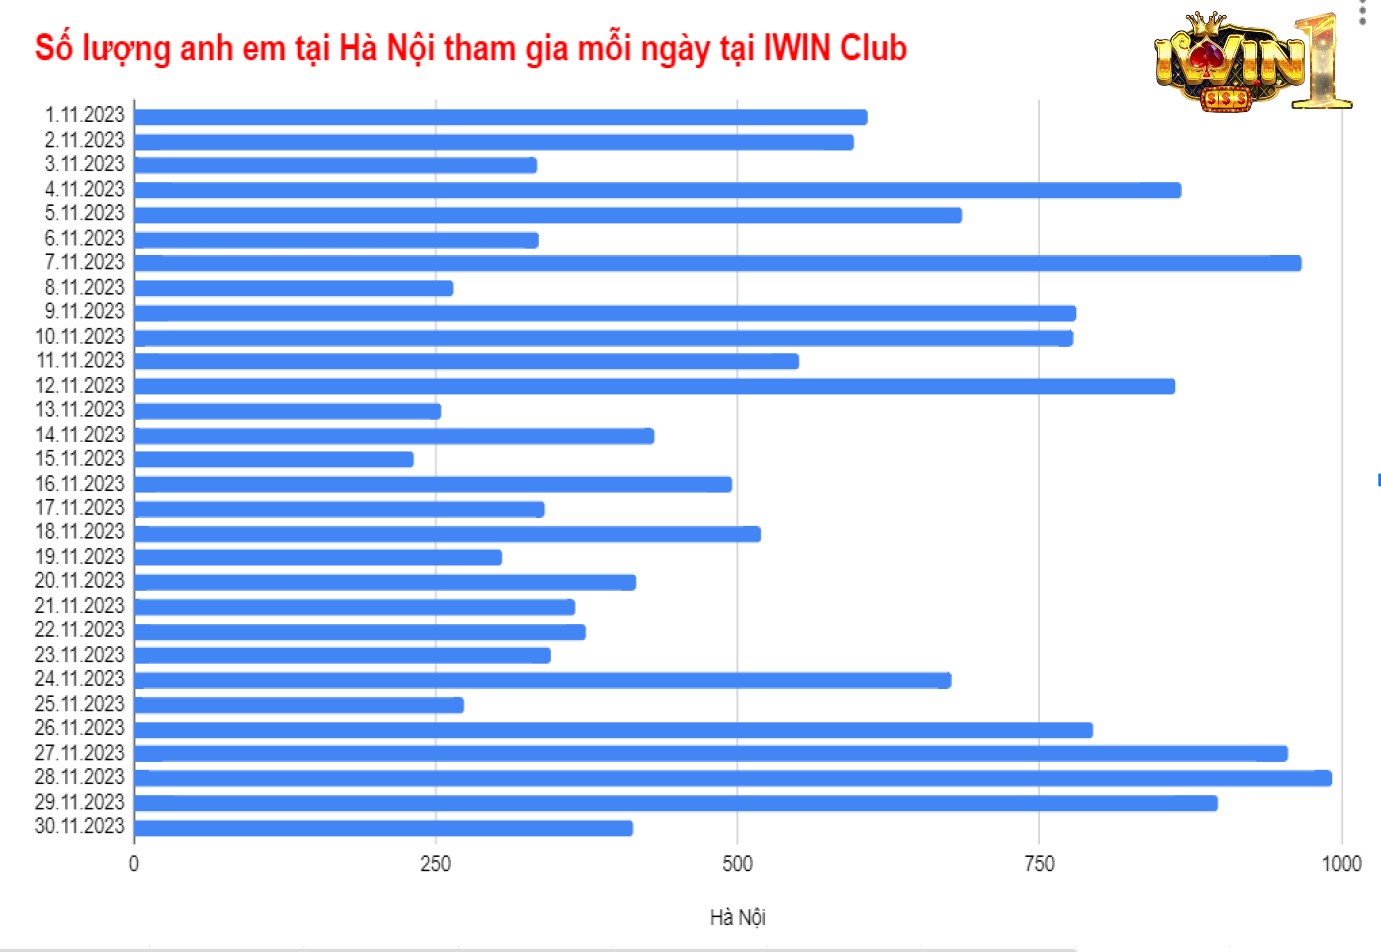 Thống kê người chơi Iwin Club tại Hà Nội